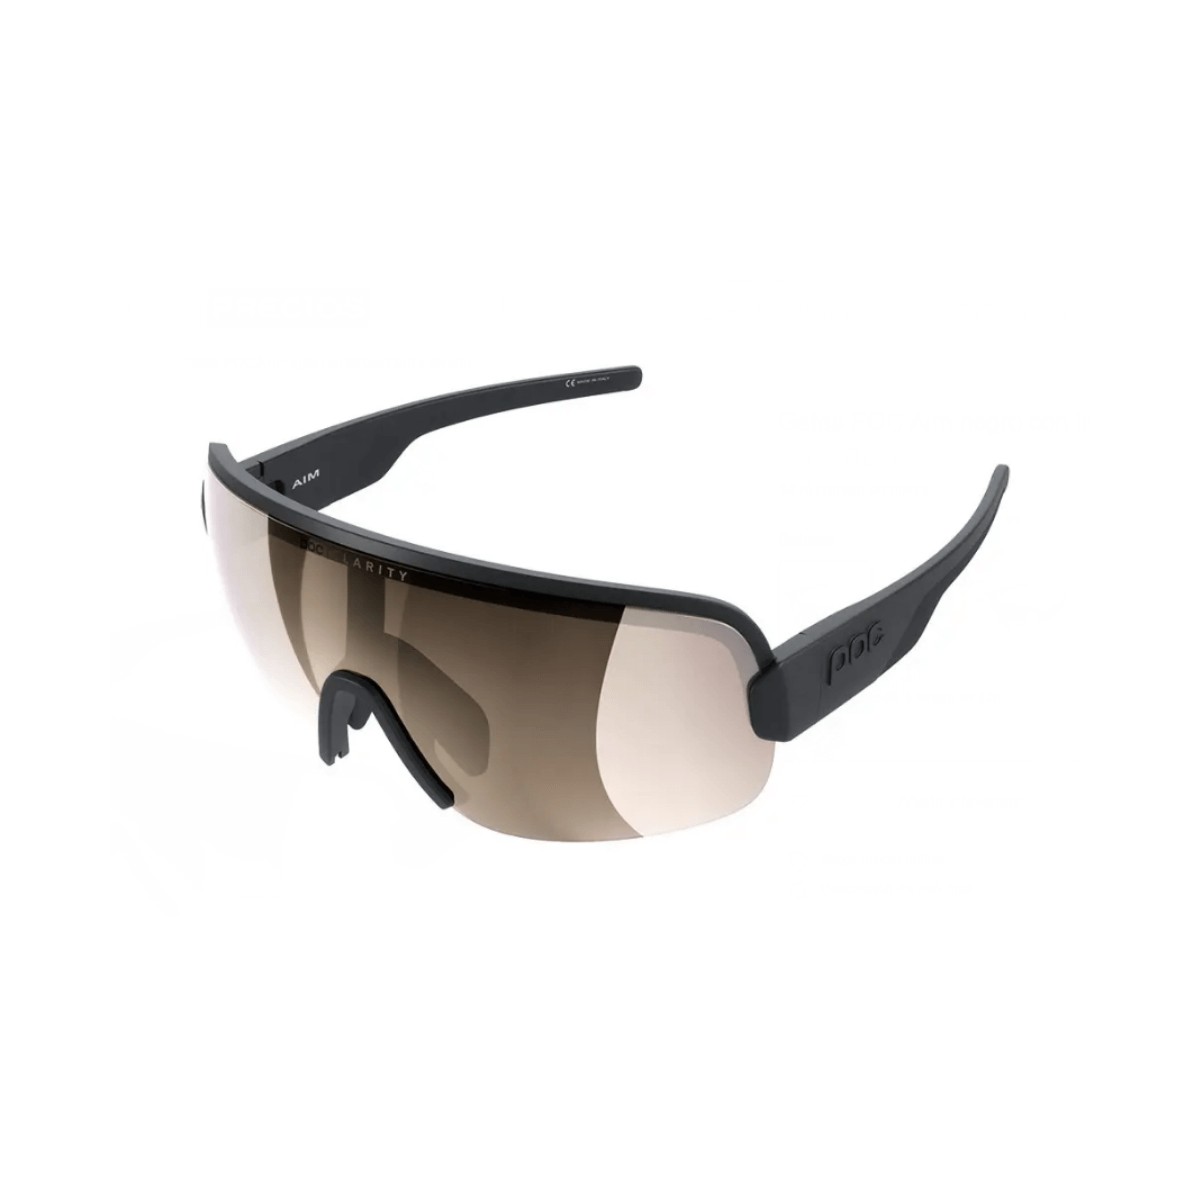 POC Aim-Brille mit schwarzen und braunen Gläsern